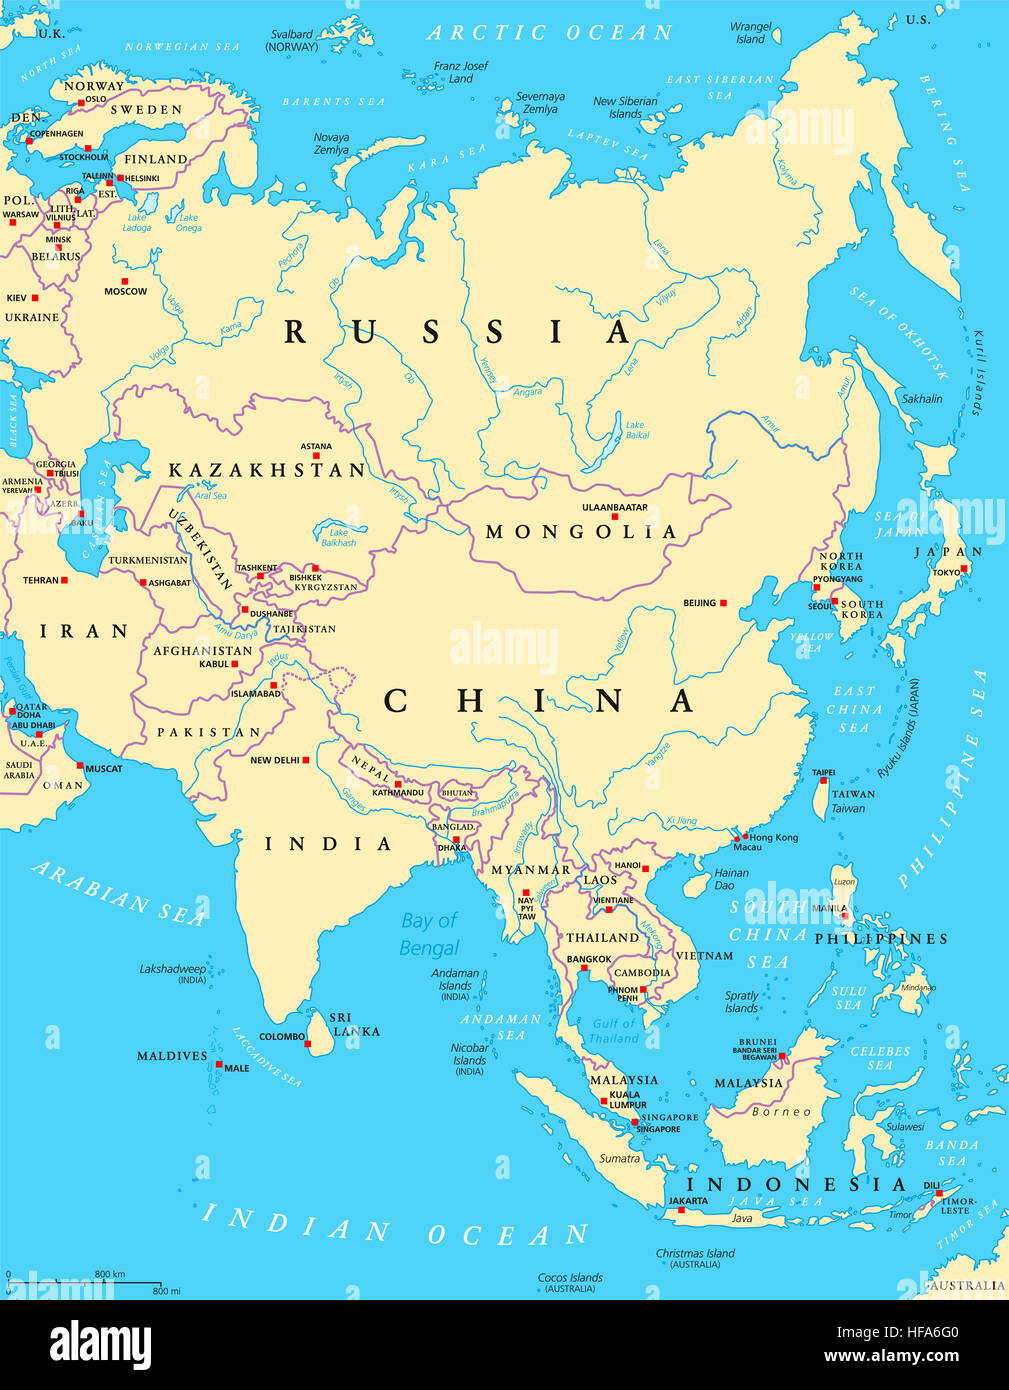 Carte politique de l'Asie avec les capitales, les frontières nationales, les rivières et les lacs. Plus grand continent. Banque D'Images